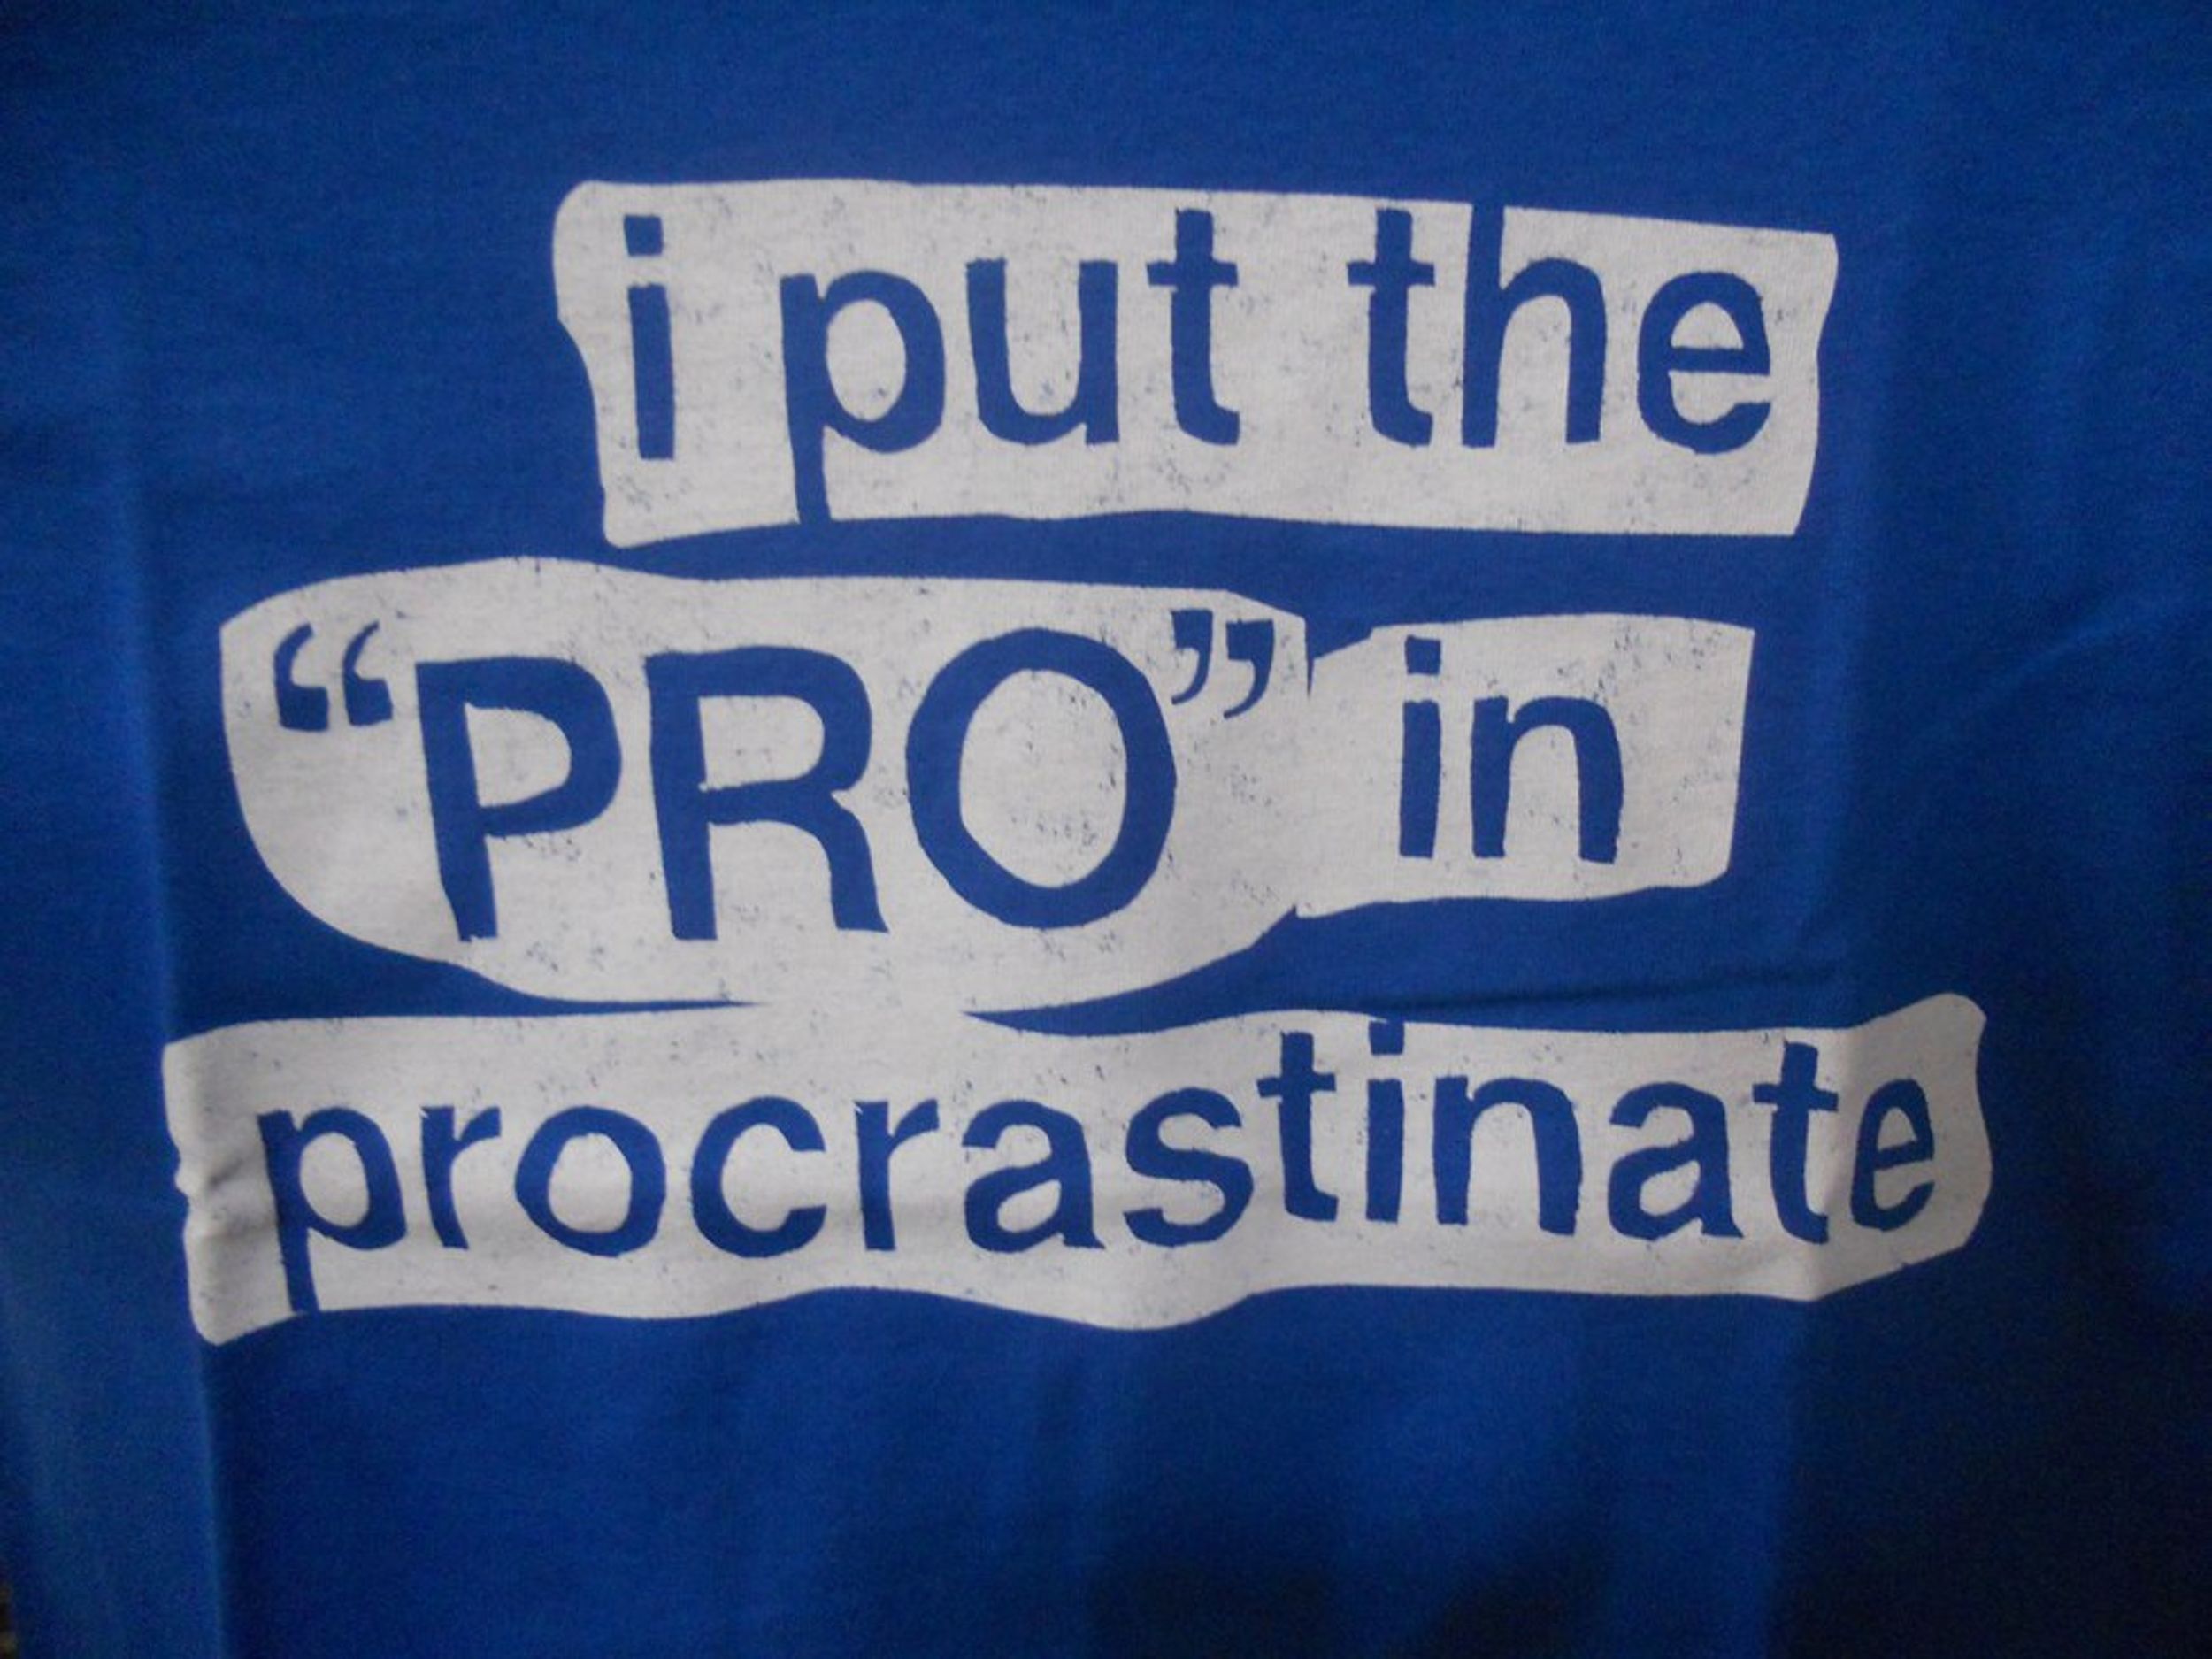 How To Become An A1 Procrastinator